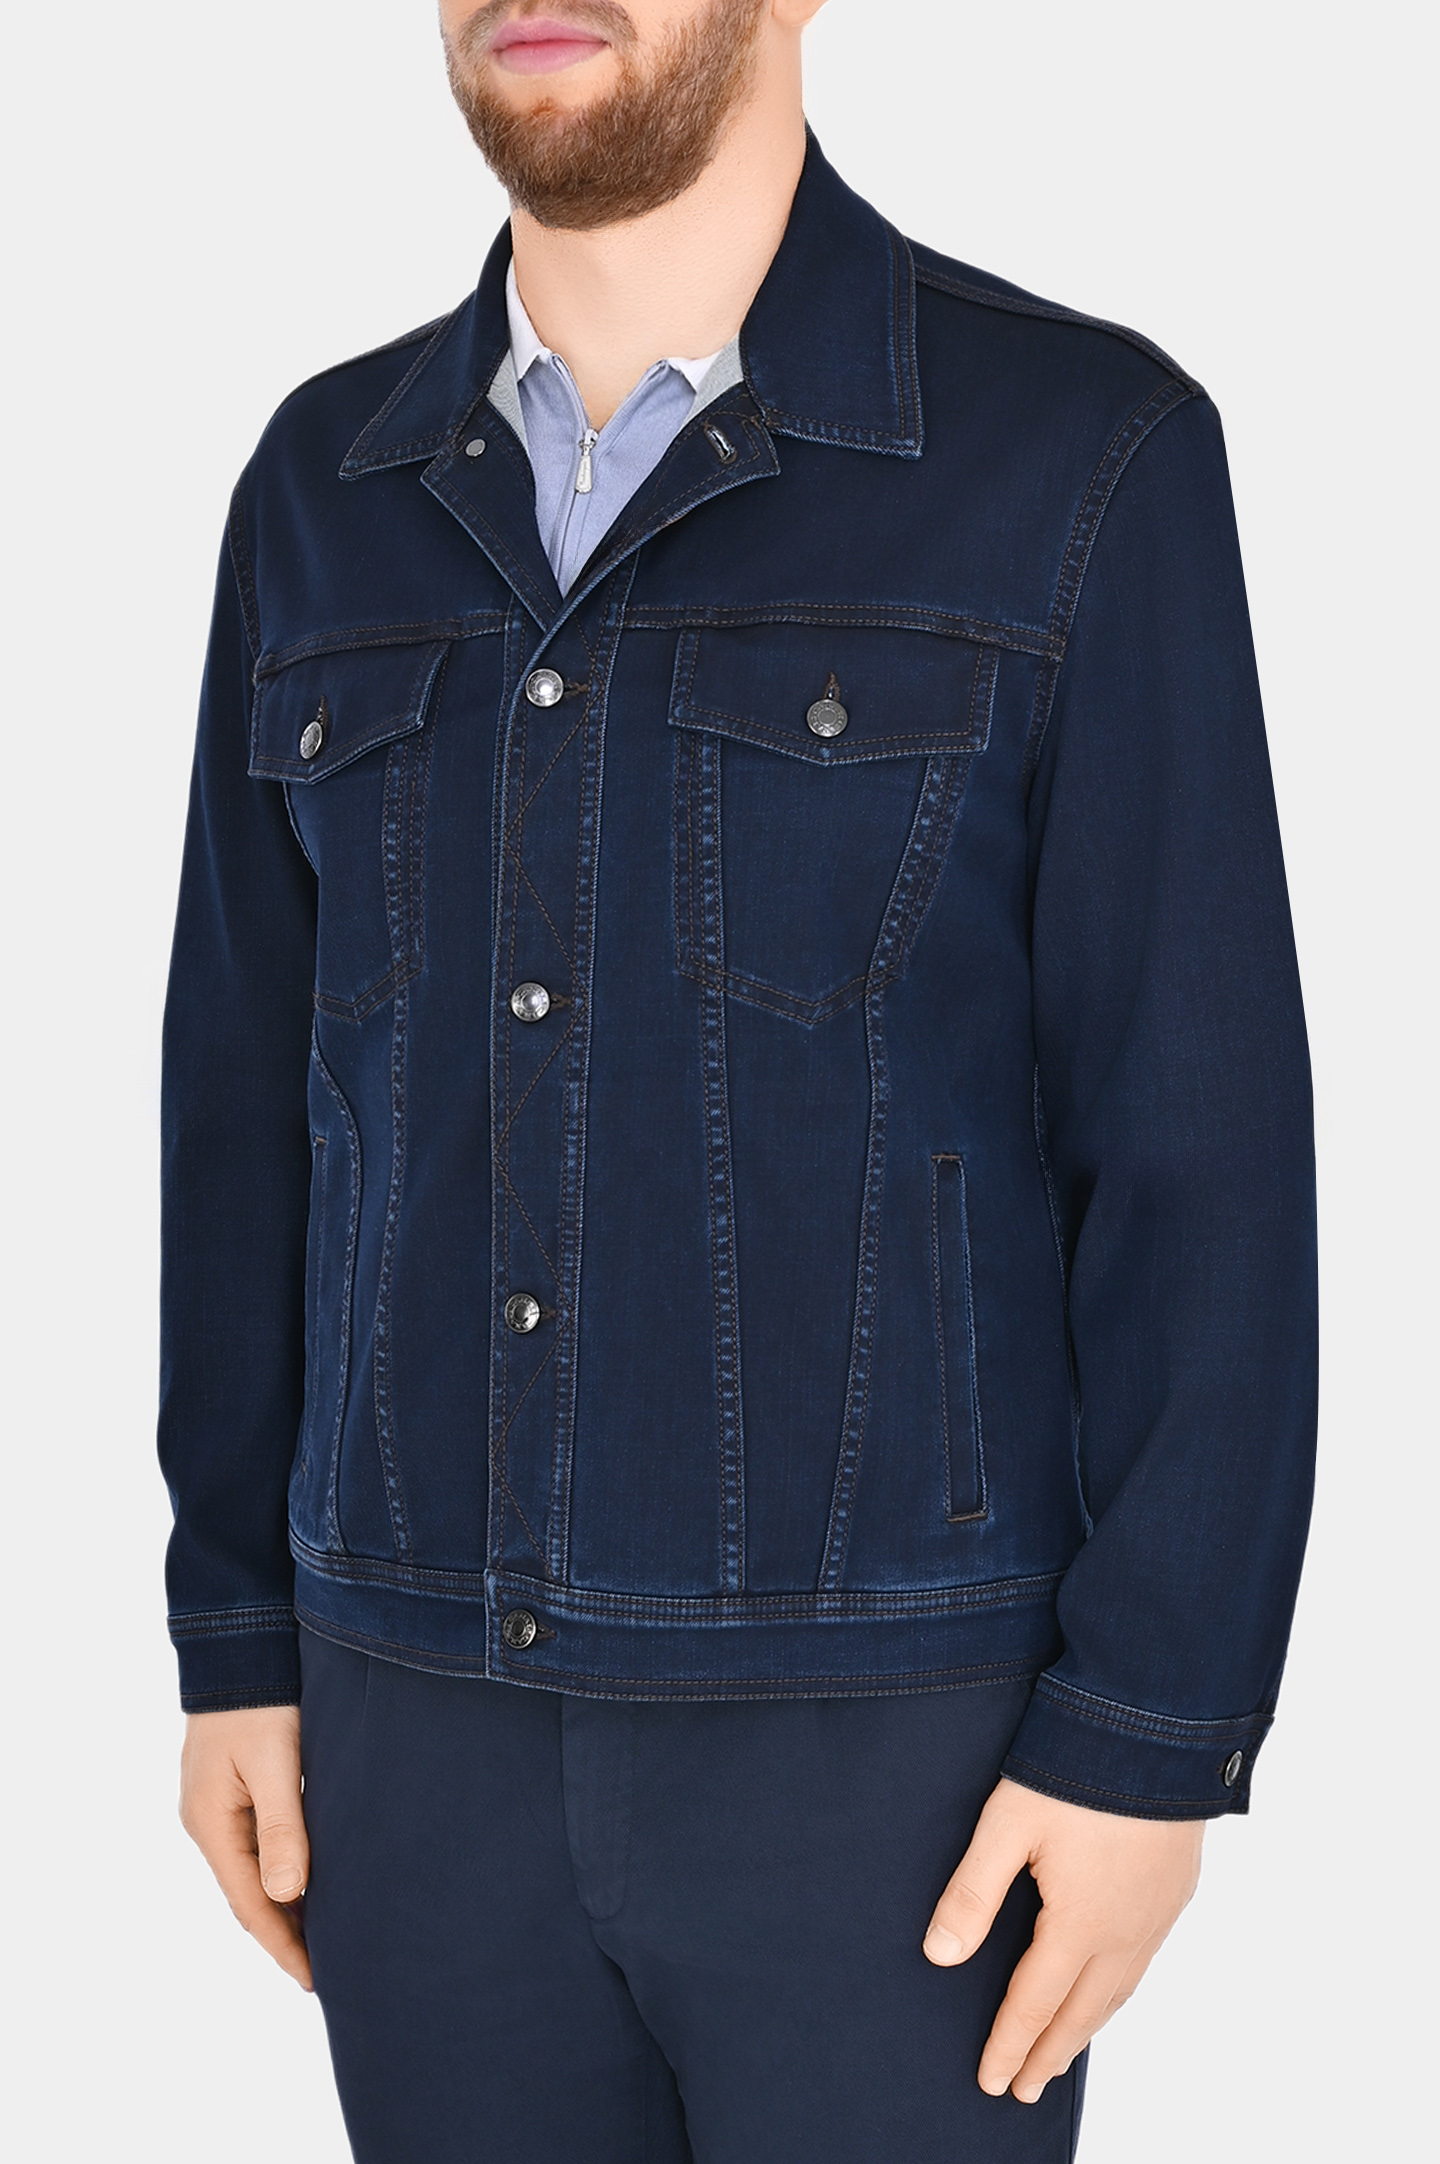 Джинсовая куртка с карманами CANALI SG02964 O40895W, цвет: Темно-синий, Мужской